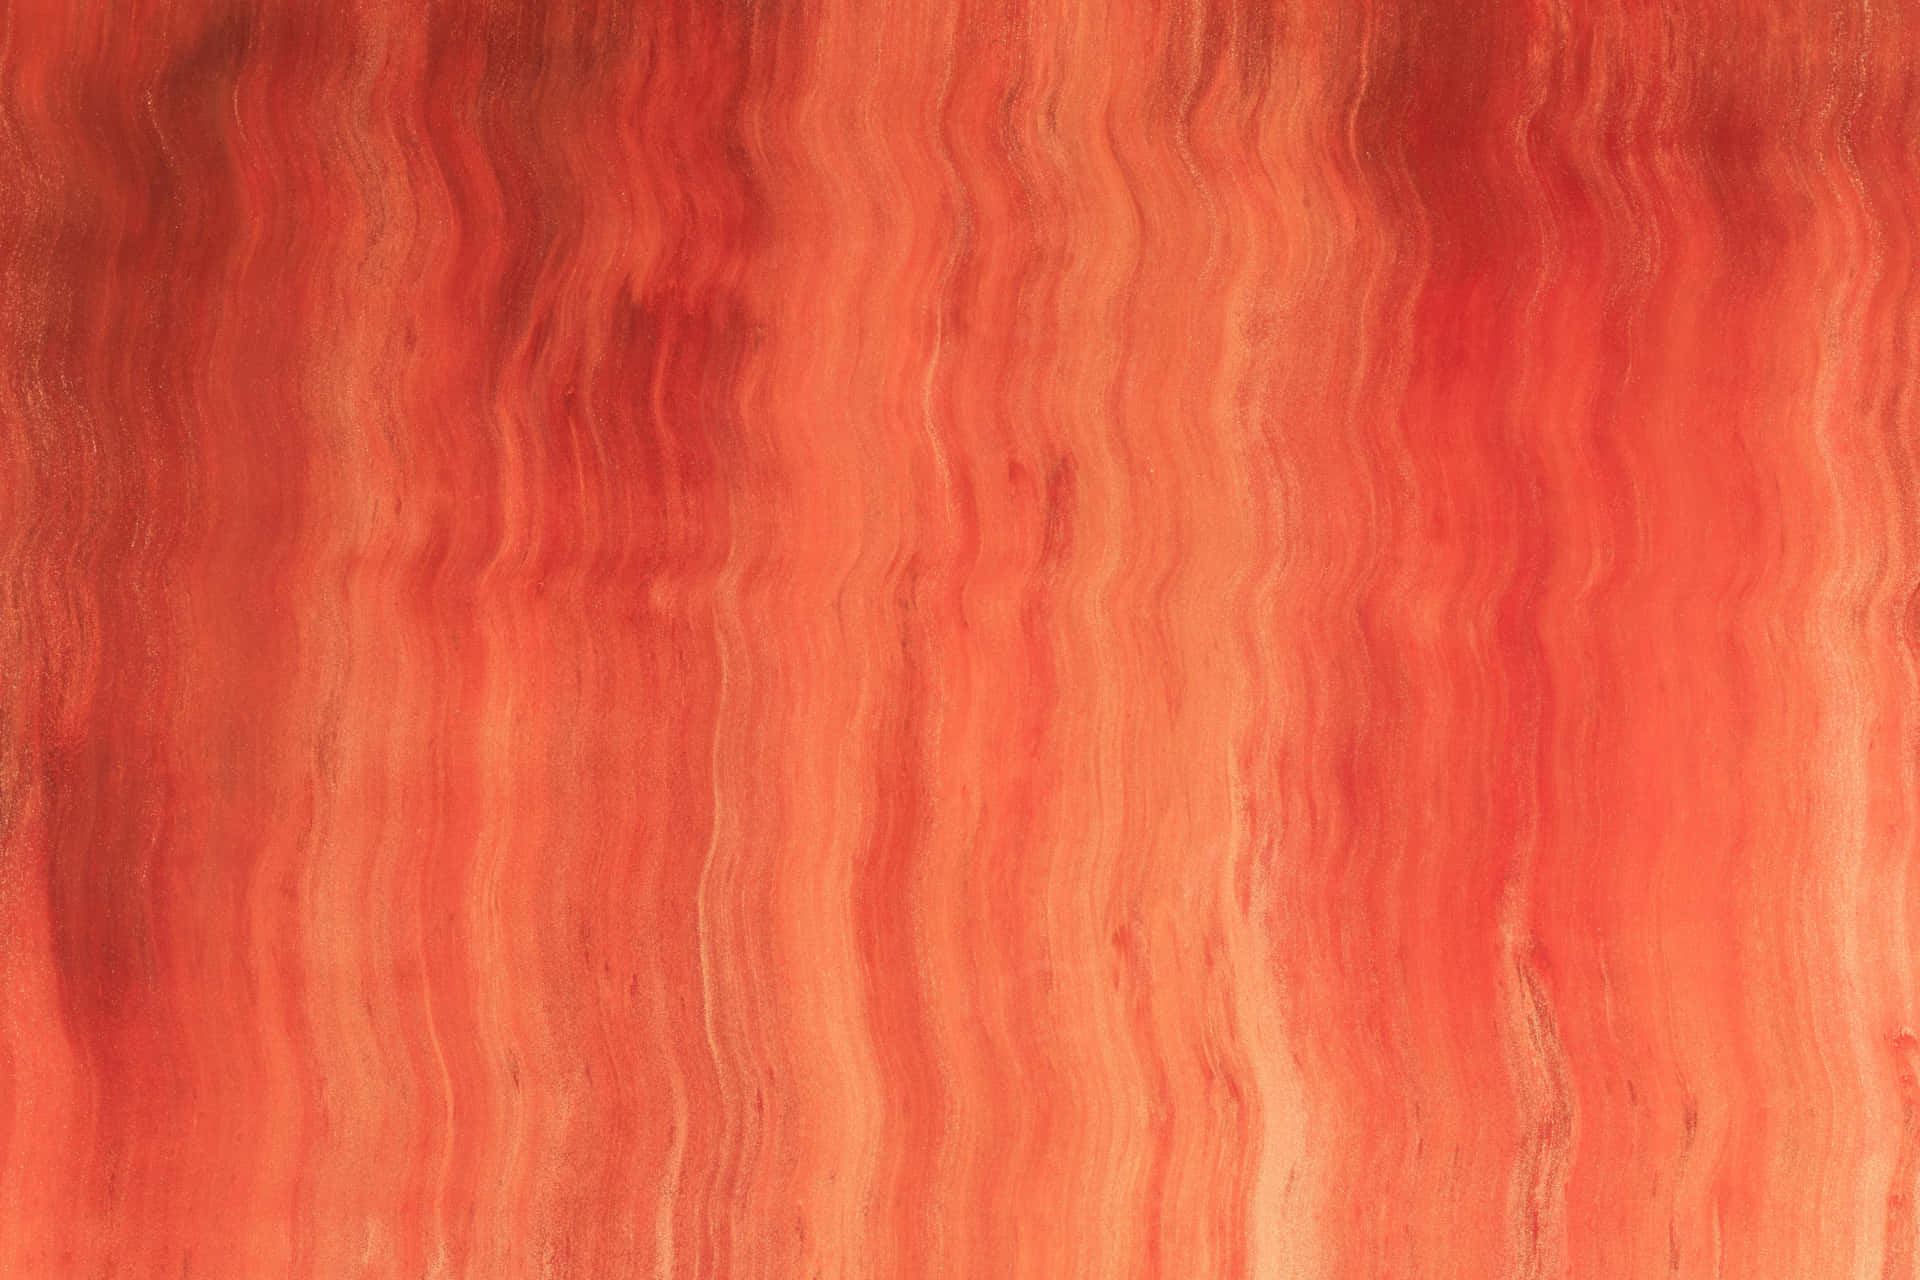 Wellenförmigesmuster, Orangefarbener Hintergrund